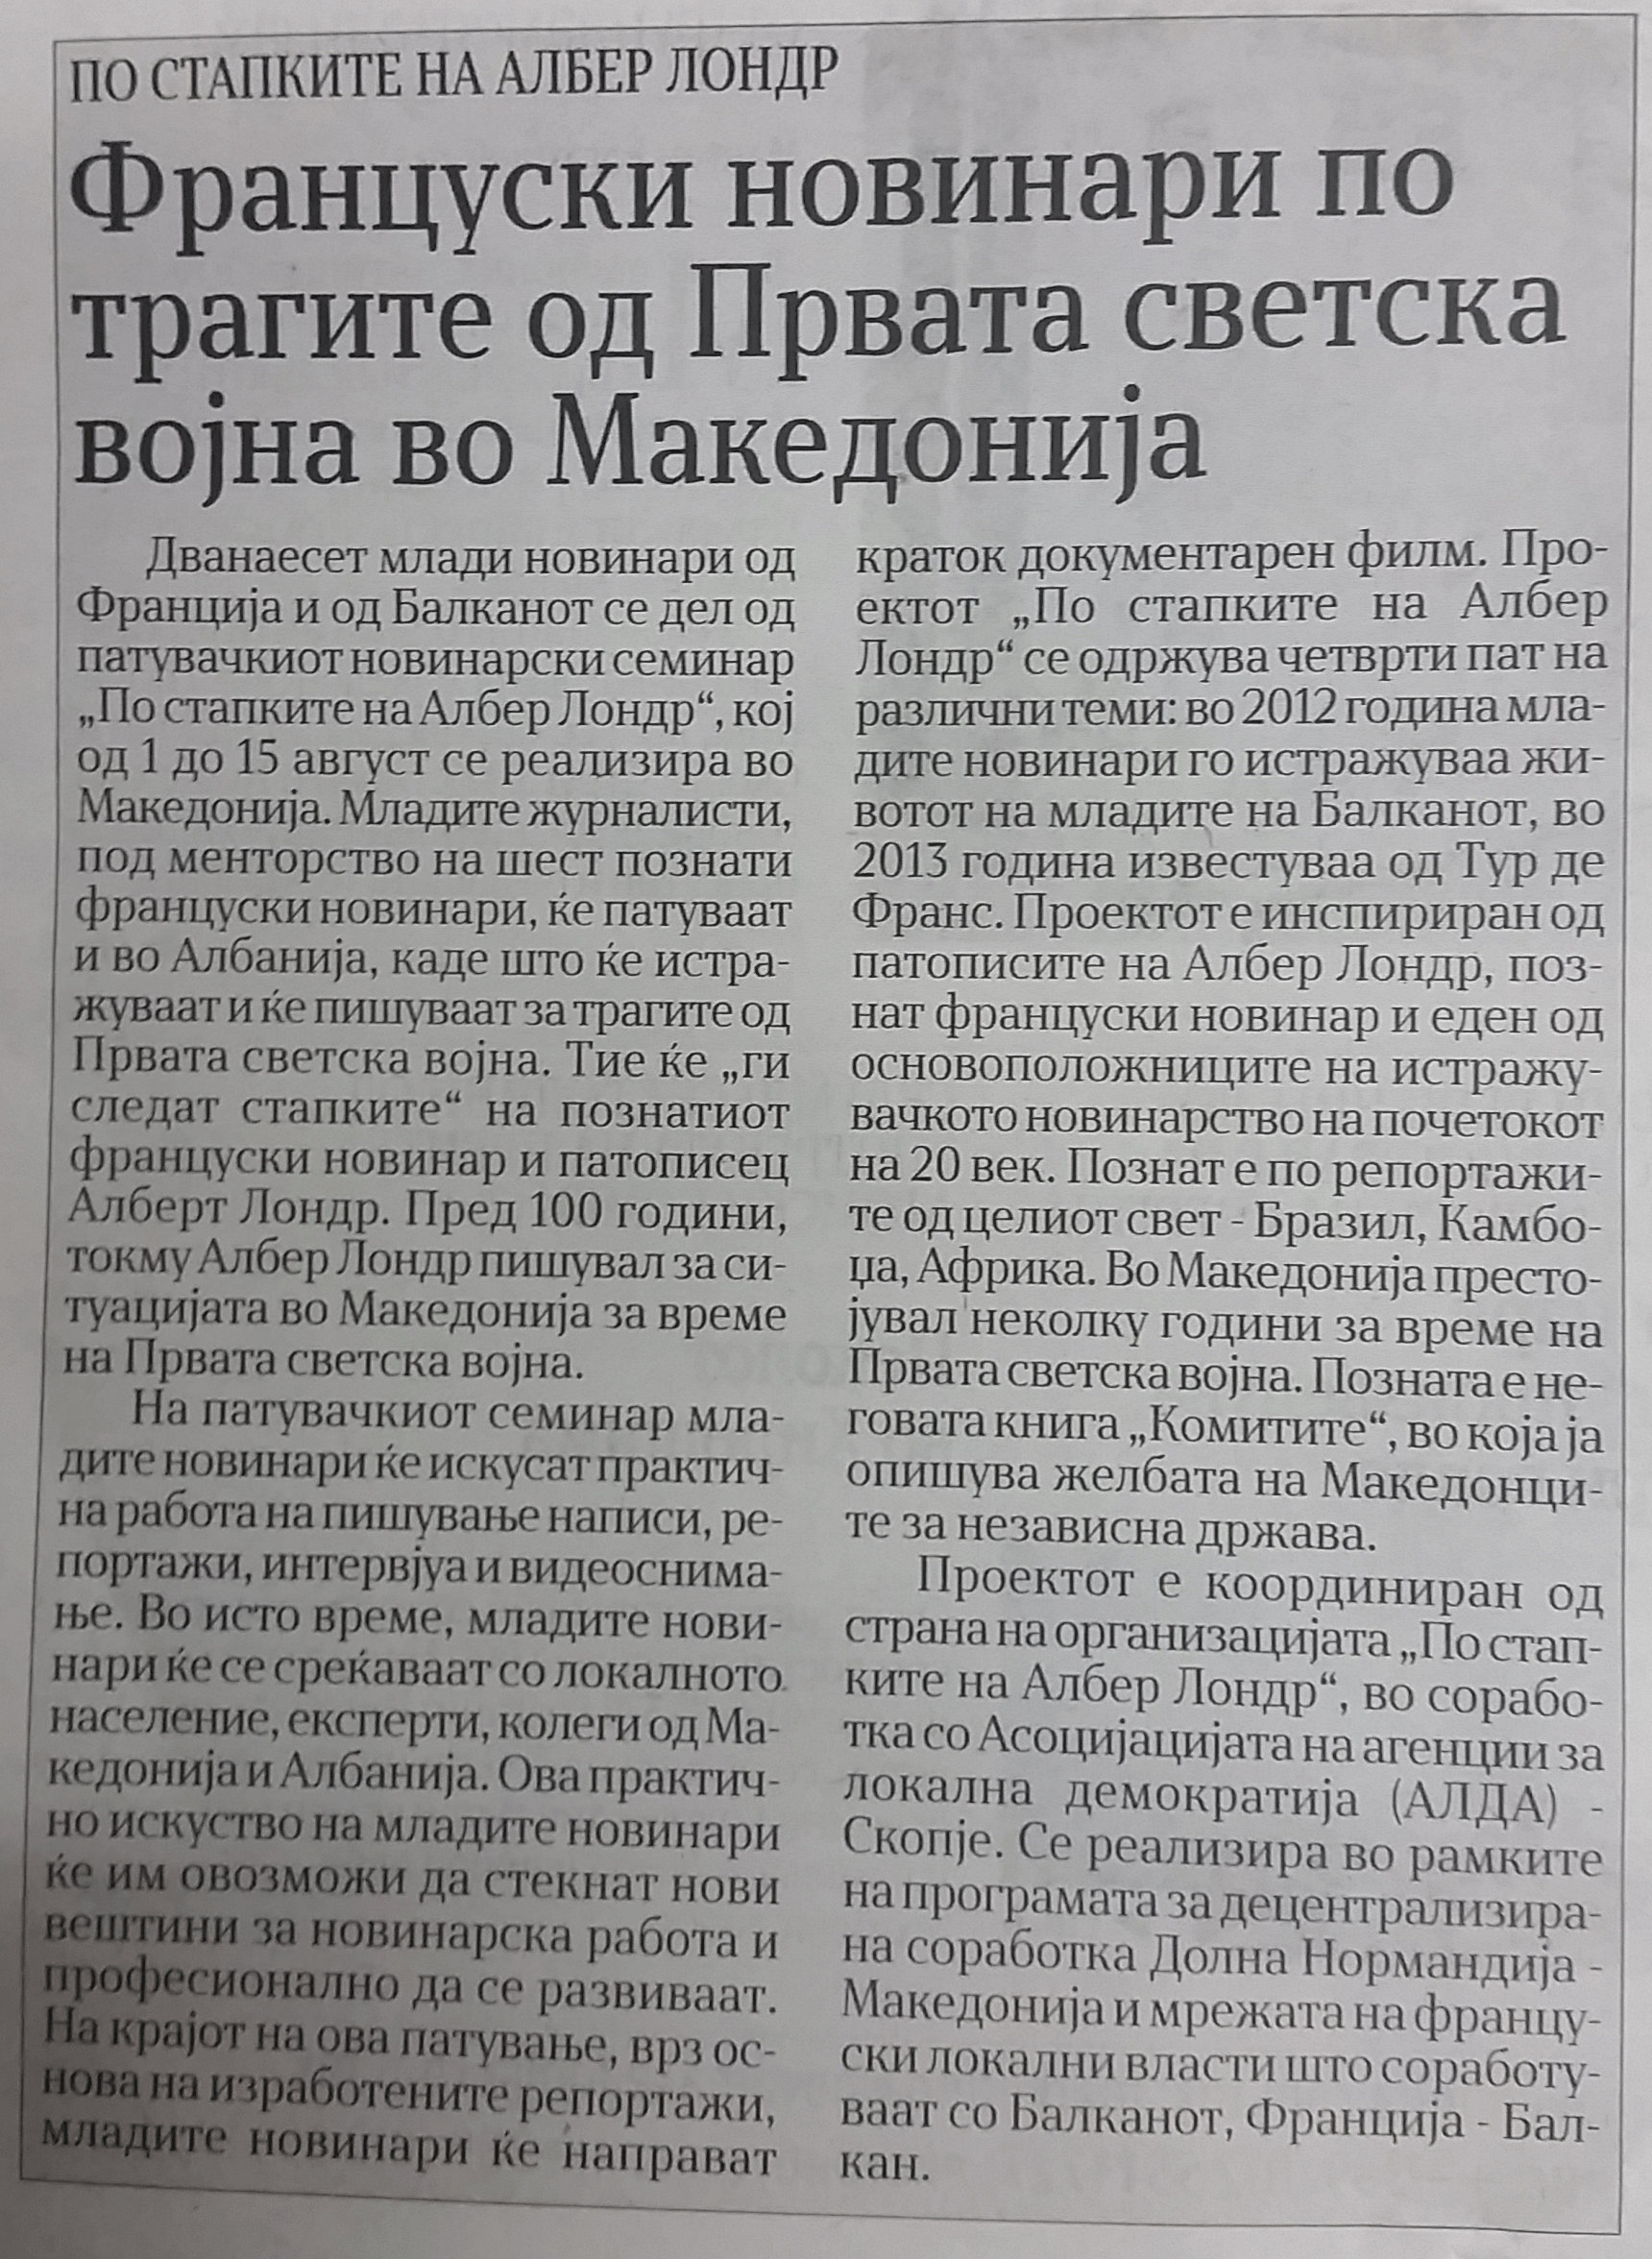 Journal Nova Makedonija